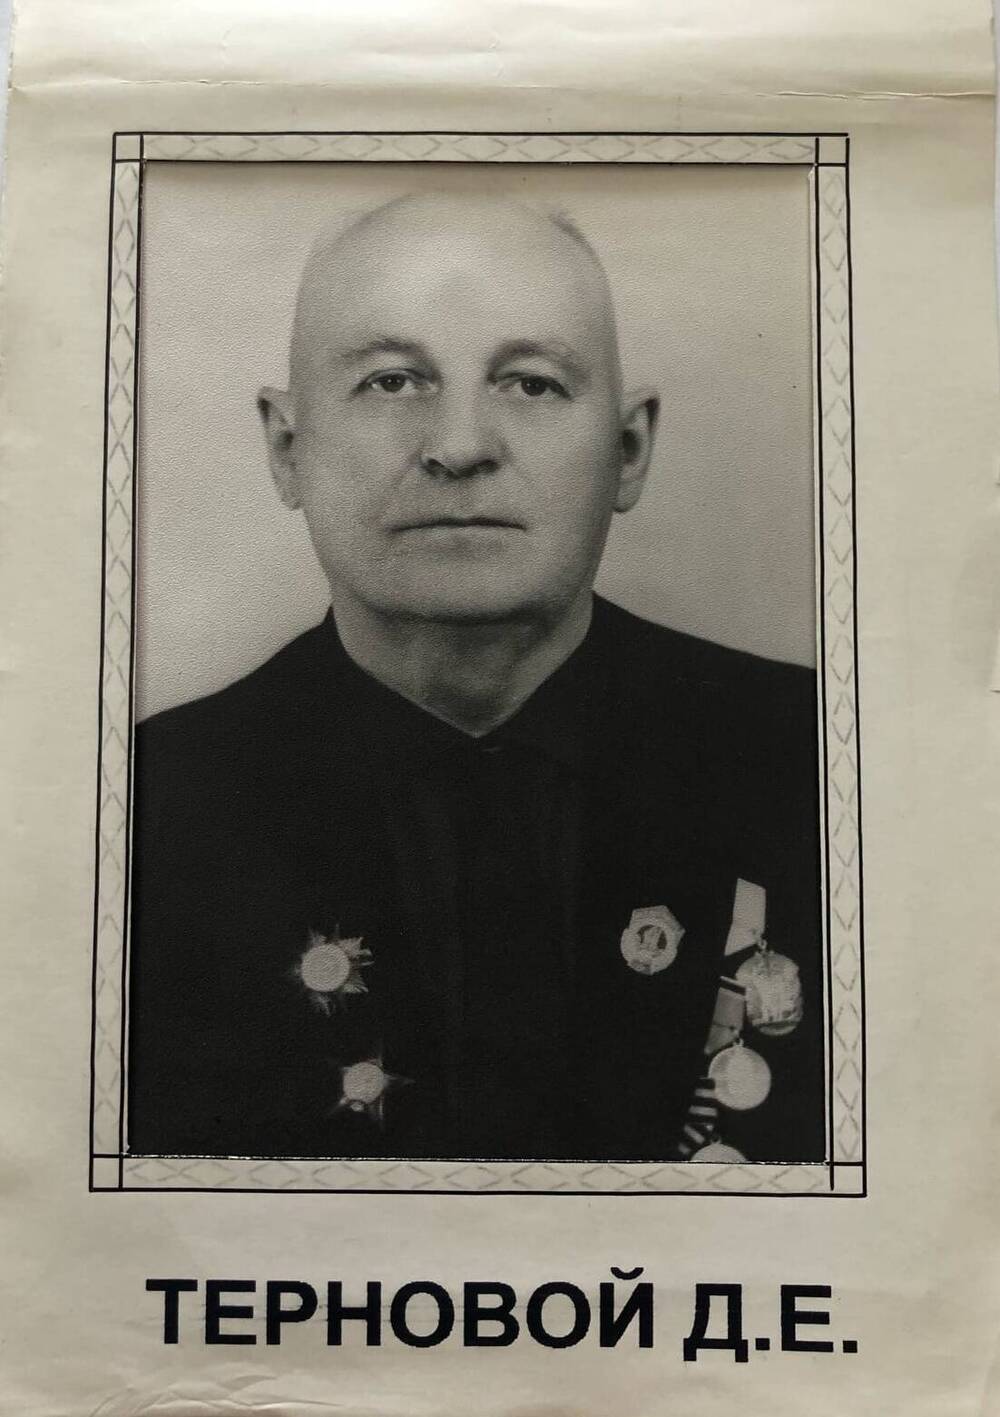 Фотография Тернового Д.Е., камышанина, участника Великой Отечественной войны 1941-1945 гг., защитника Сталинграда